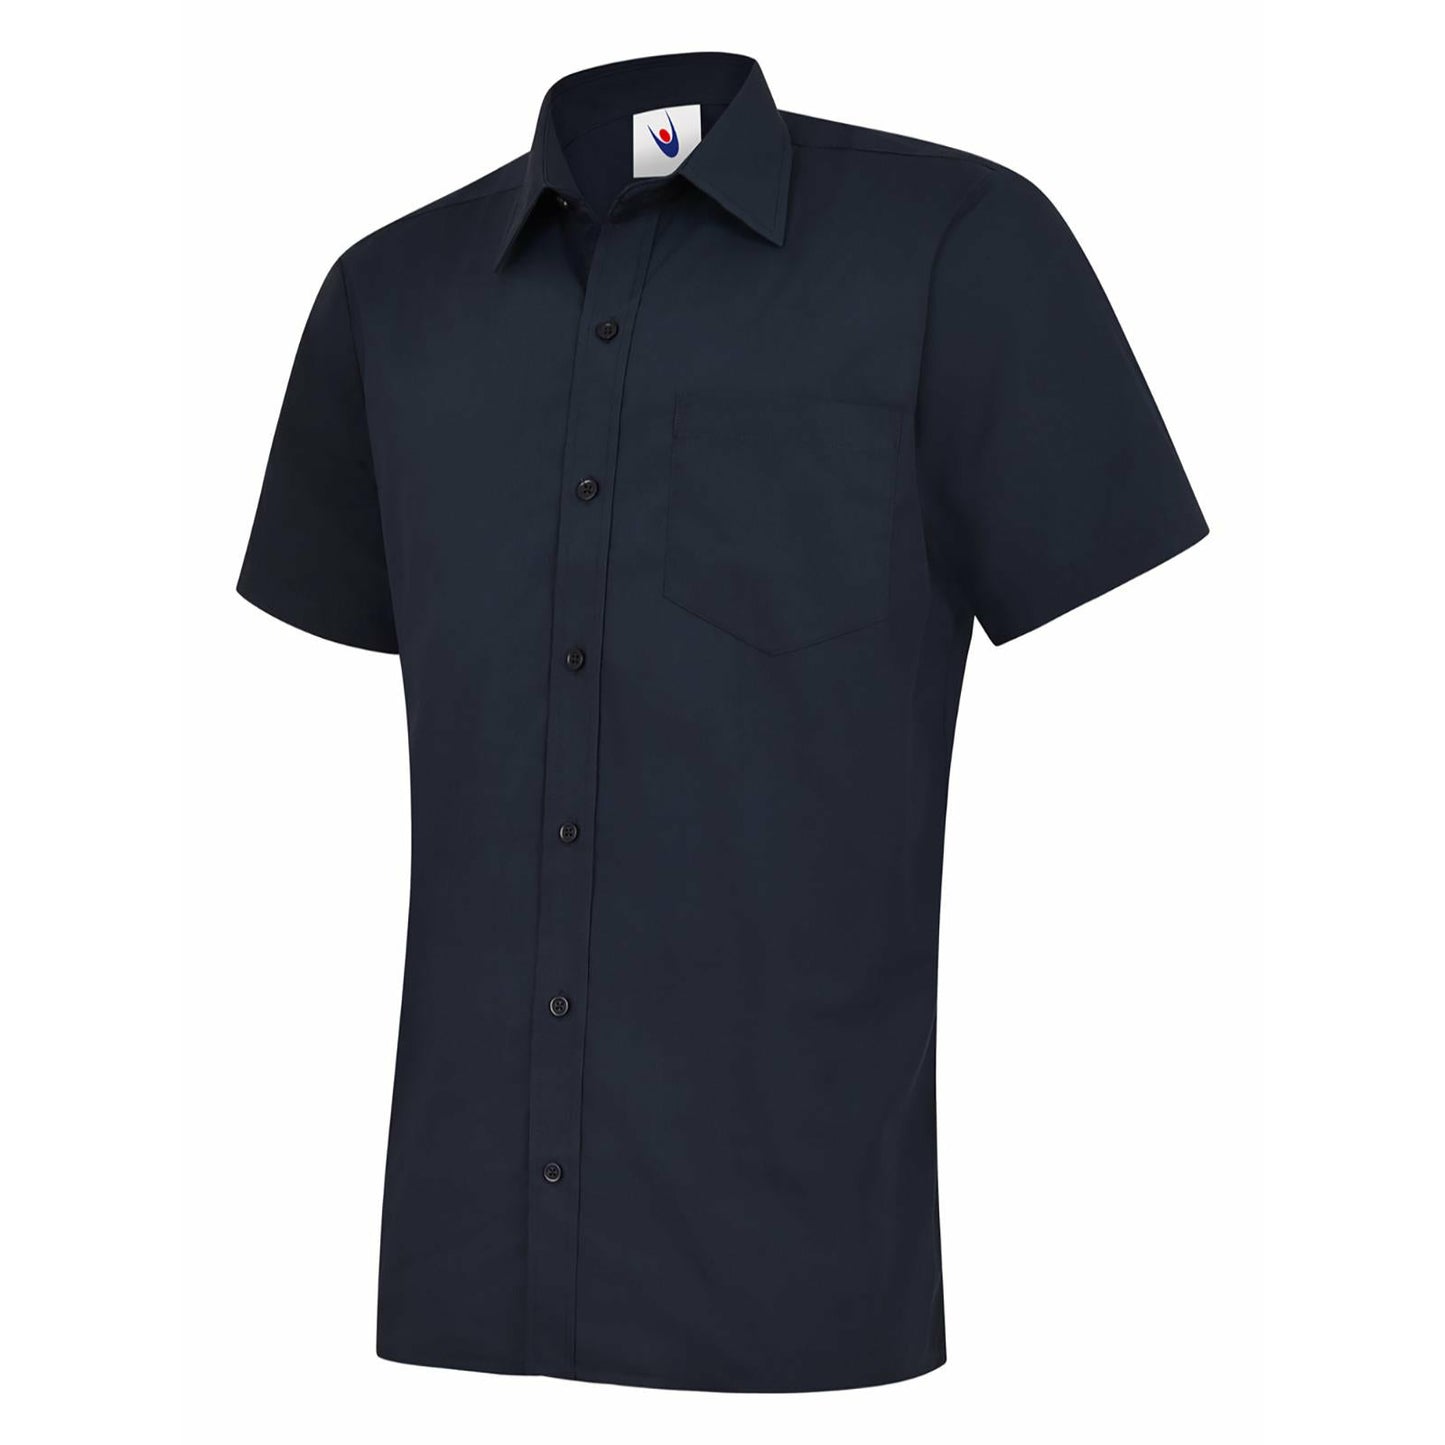 Mens Poplin Half Sleeve Shirt (14.5 - 16.5) - Navy